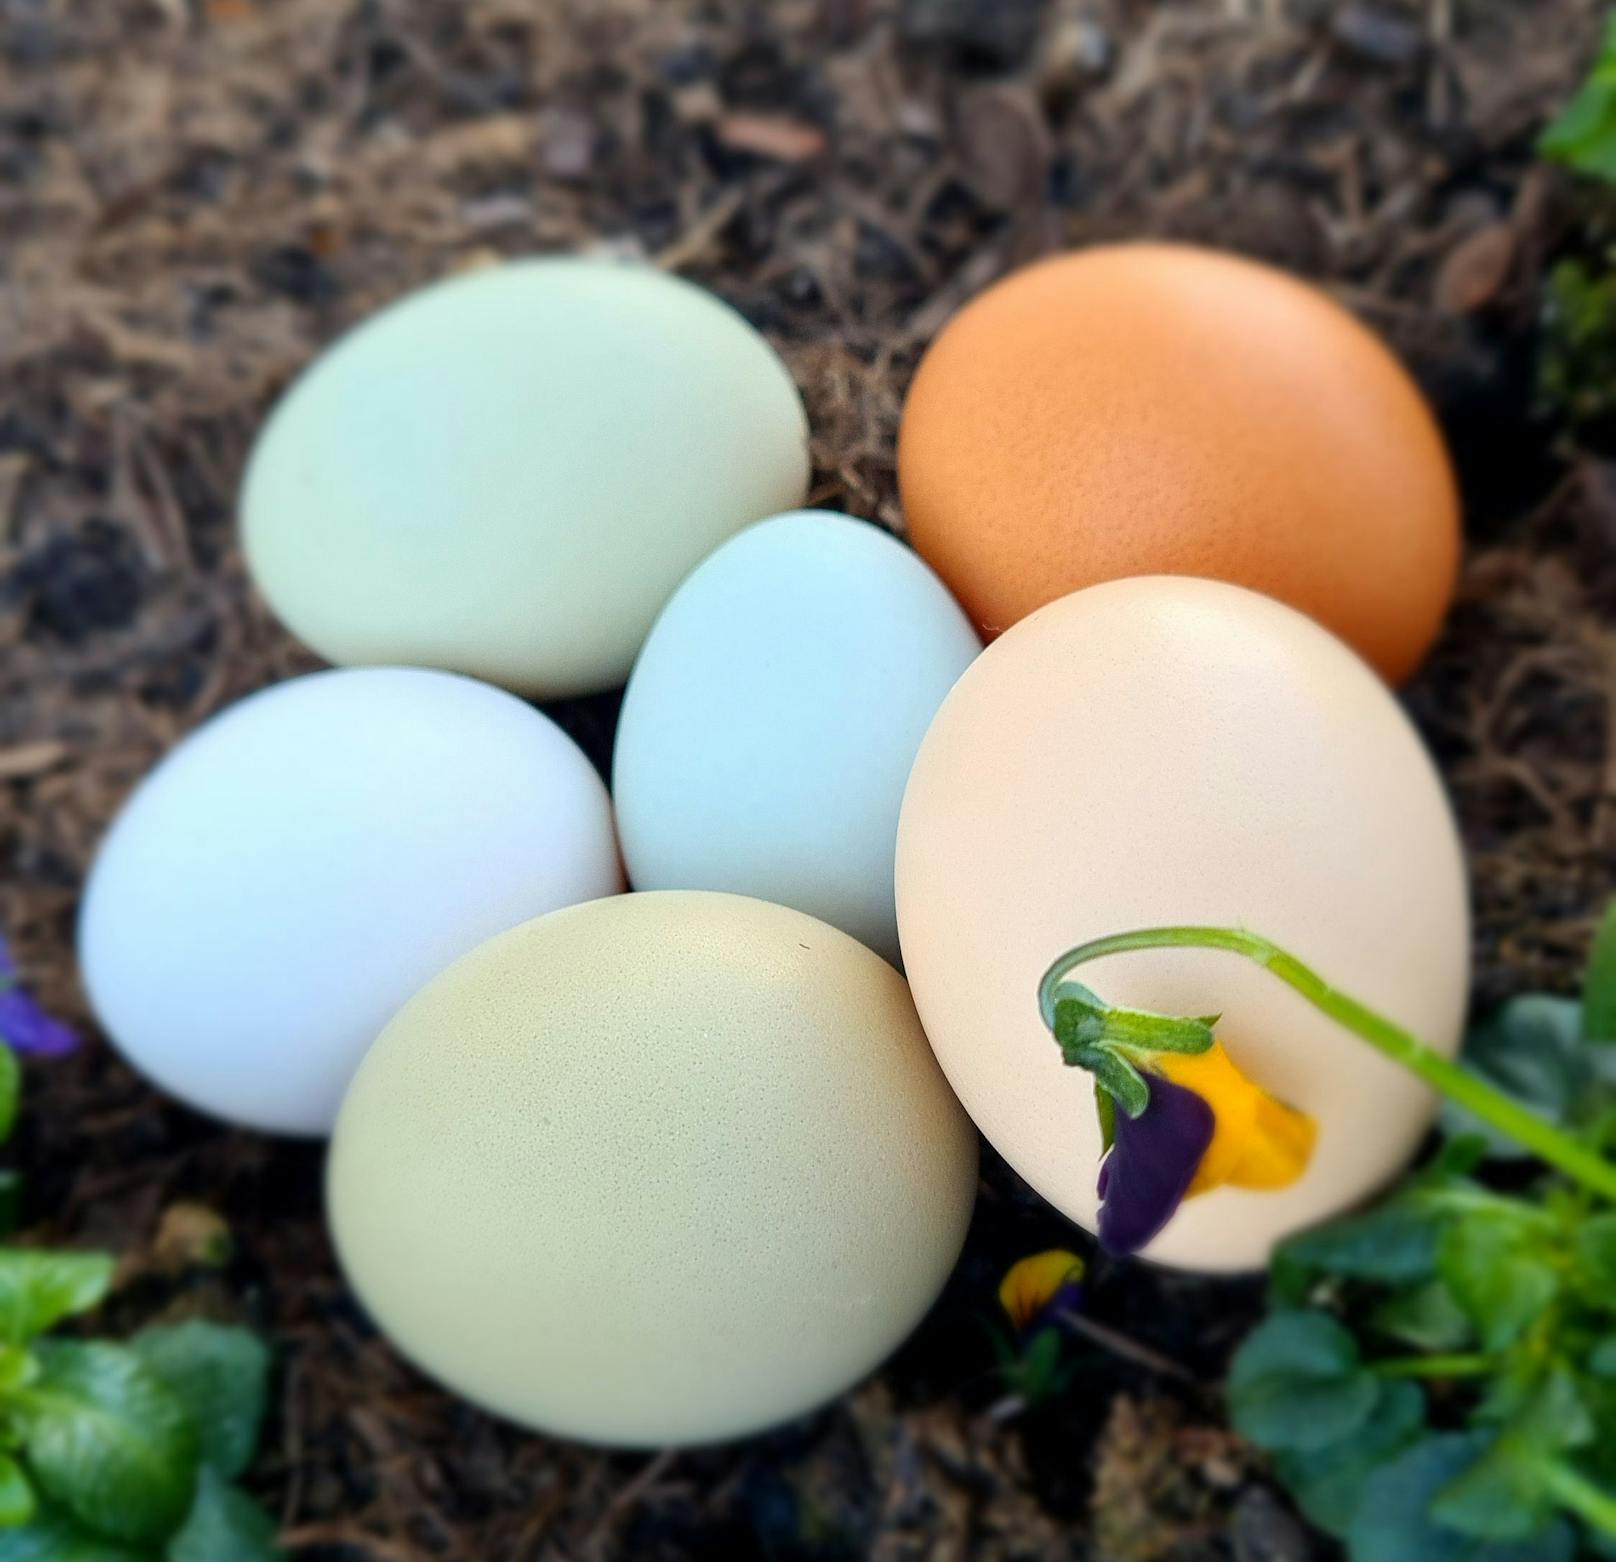 Bei Thallers Hendln geht es bunt zu, denn sie legen ganzjährig hellblaue, hell- und dunkelgrüne Eier.